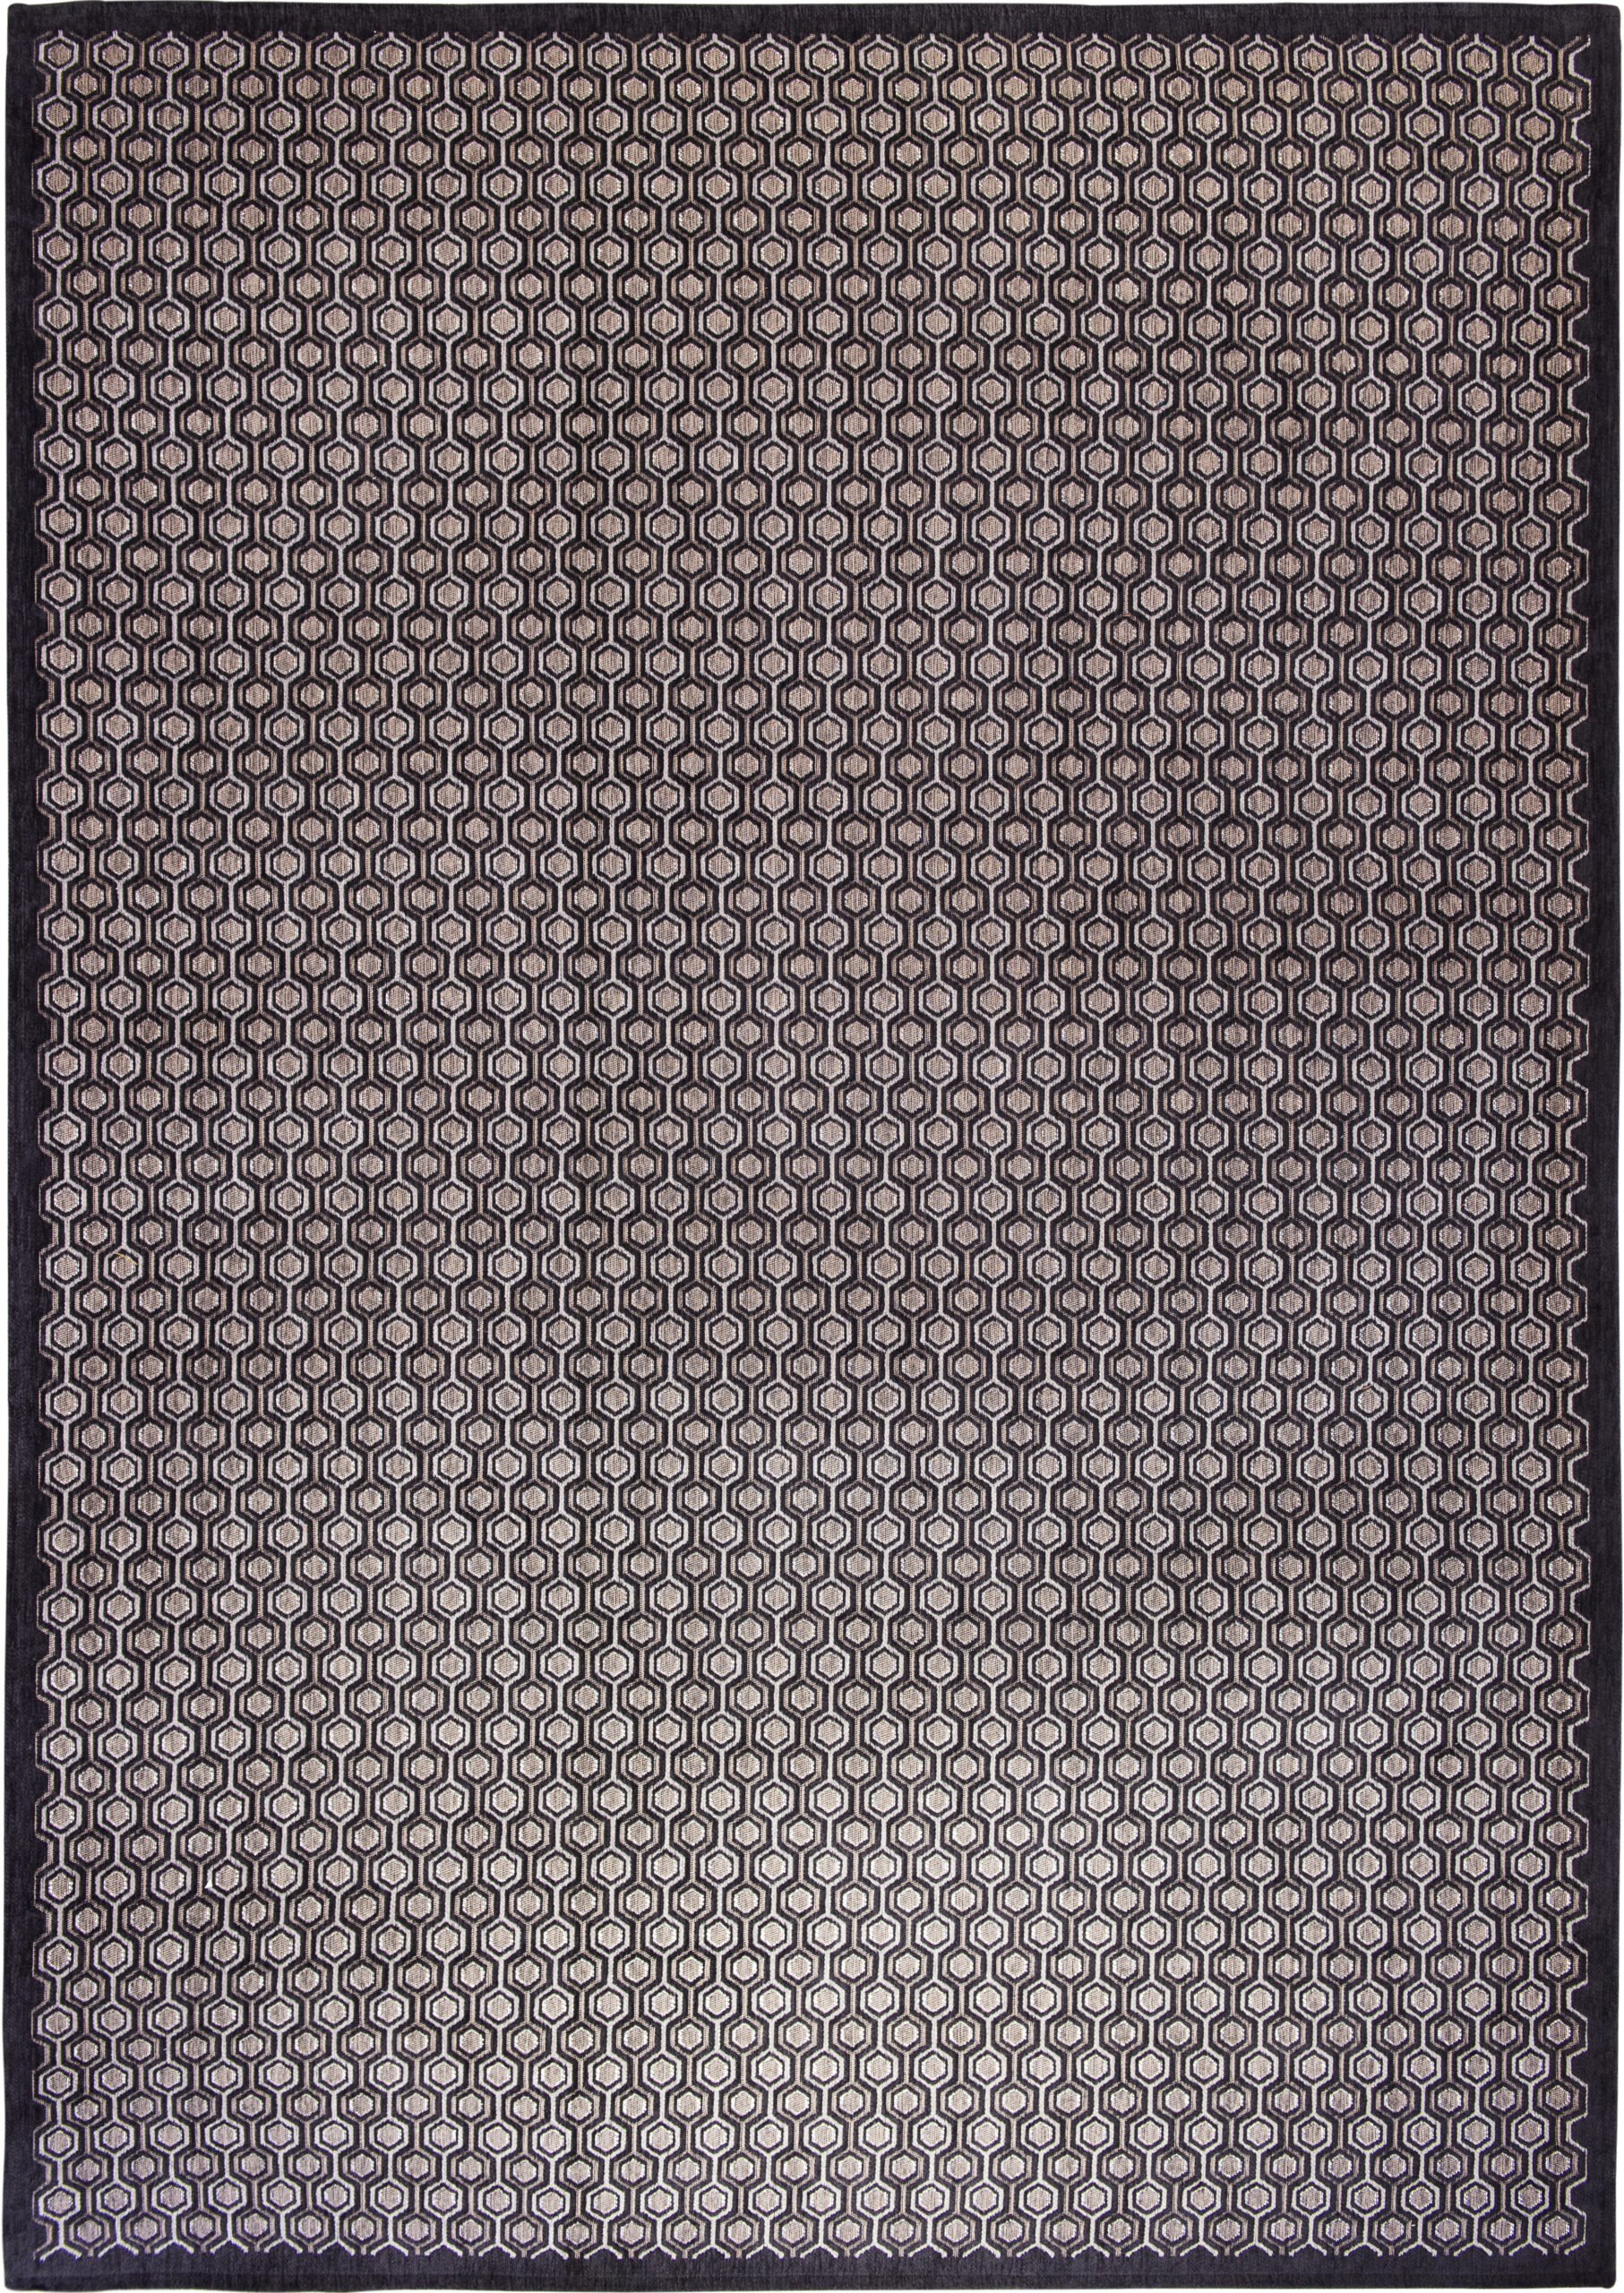 Szaro Srebrny Dywan Nowoczesny - NUOVO CROMO 9015 - Rozmiar: 200x300 cm